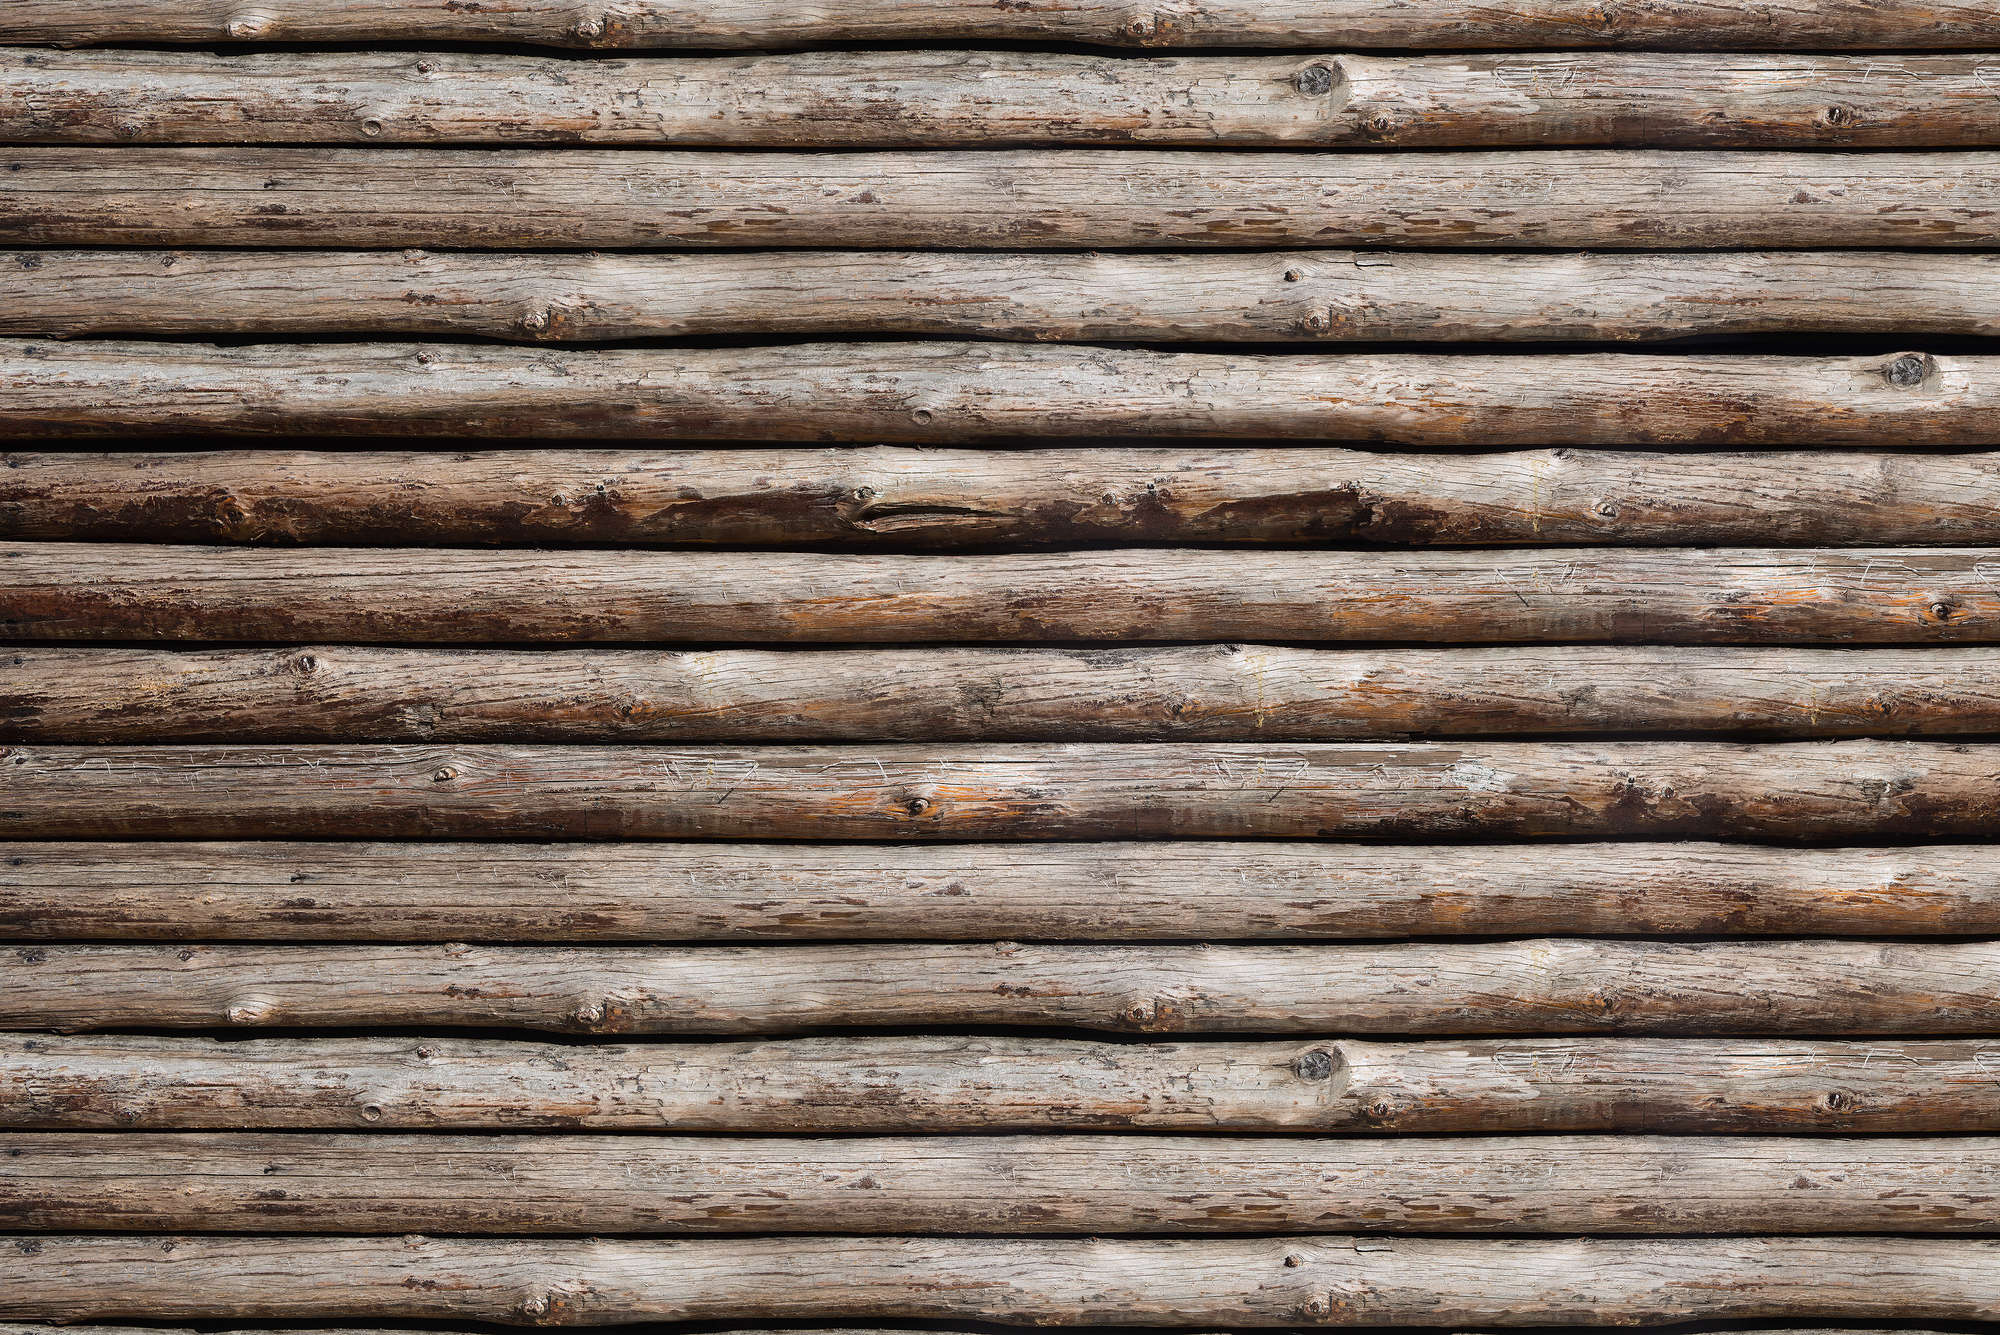             Fotomurali in legno su parete di casetta di legno su pile liscio di prima qualità
        